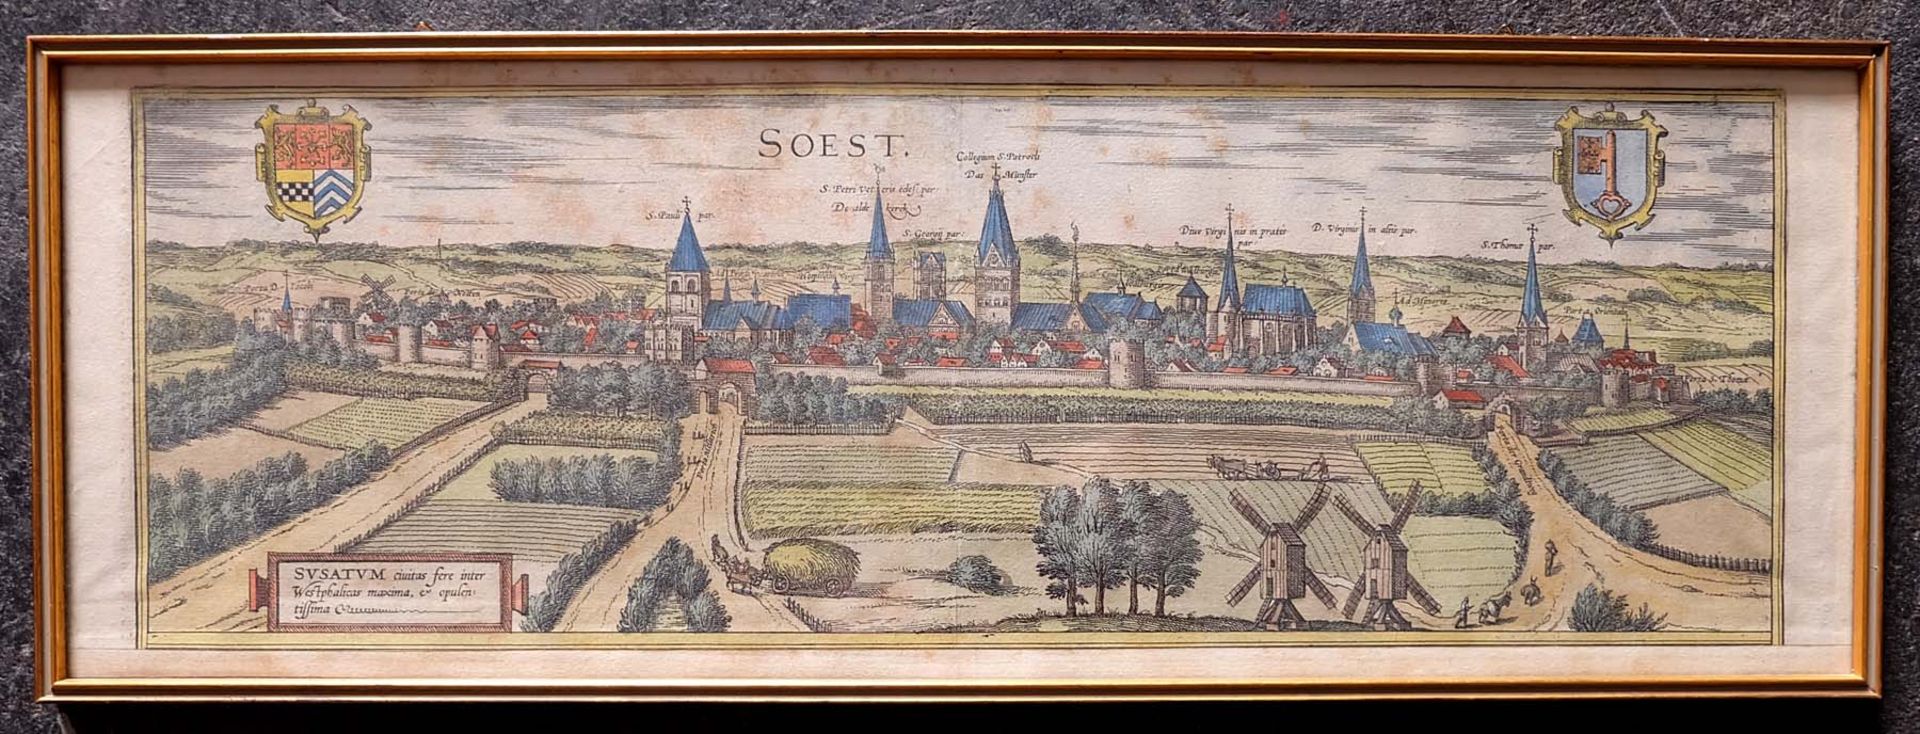 HOGENBERG, Frans/ BRAUN, Georg, Kupferstichkarte, altcoloriert, Ansicht von Soest, Illustration zu